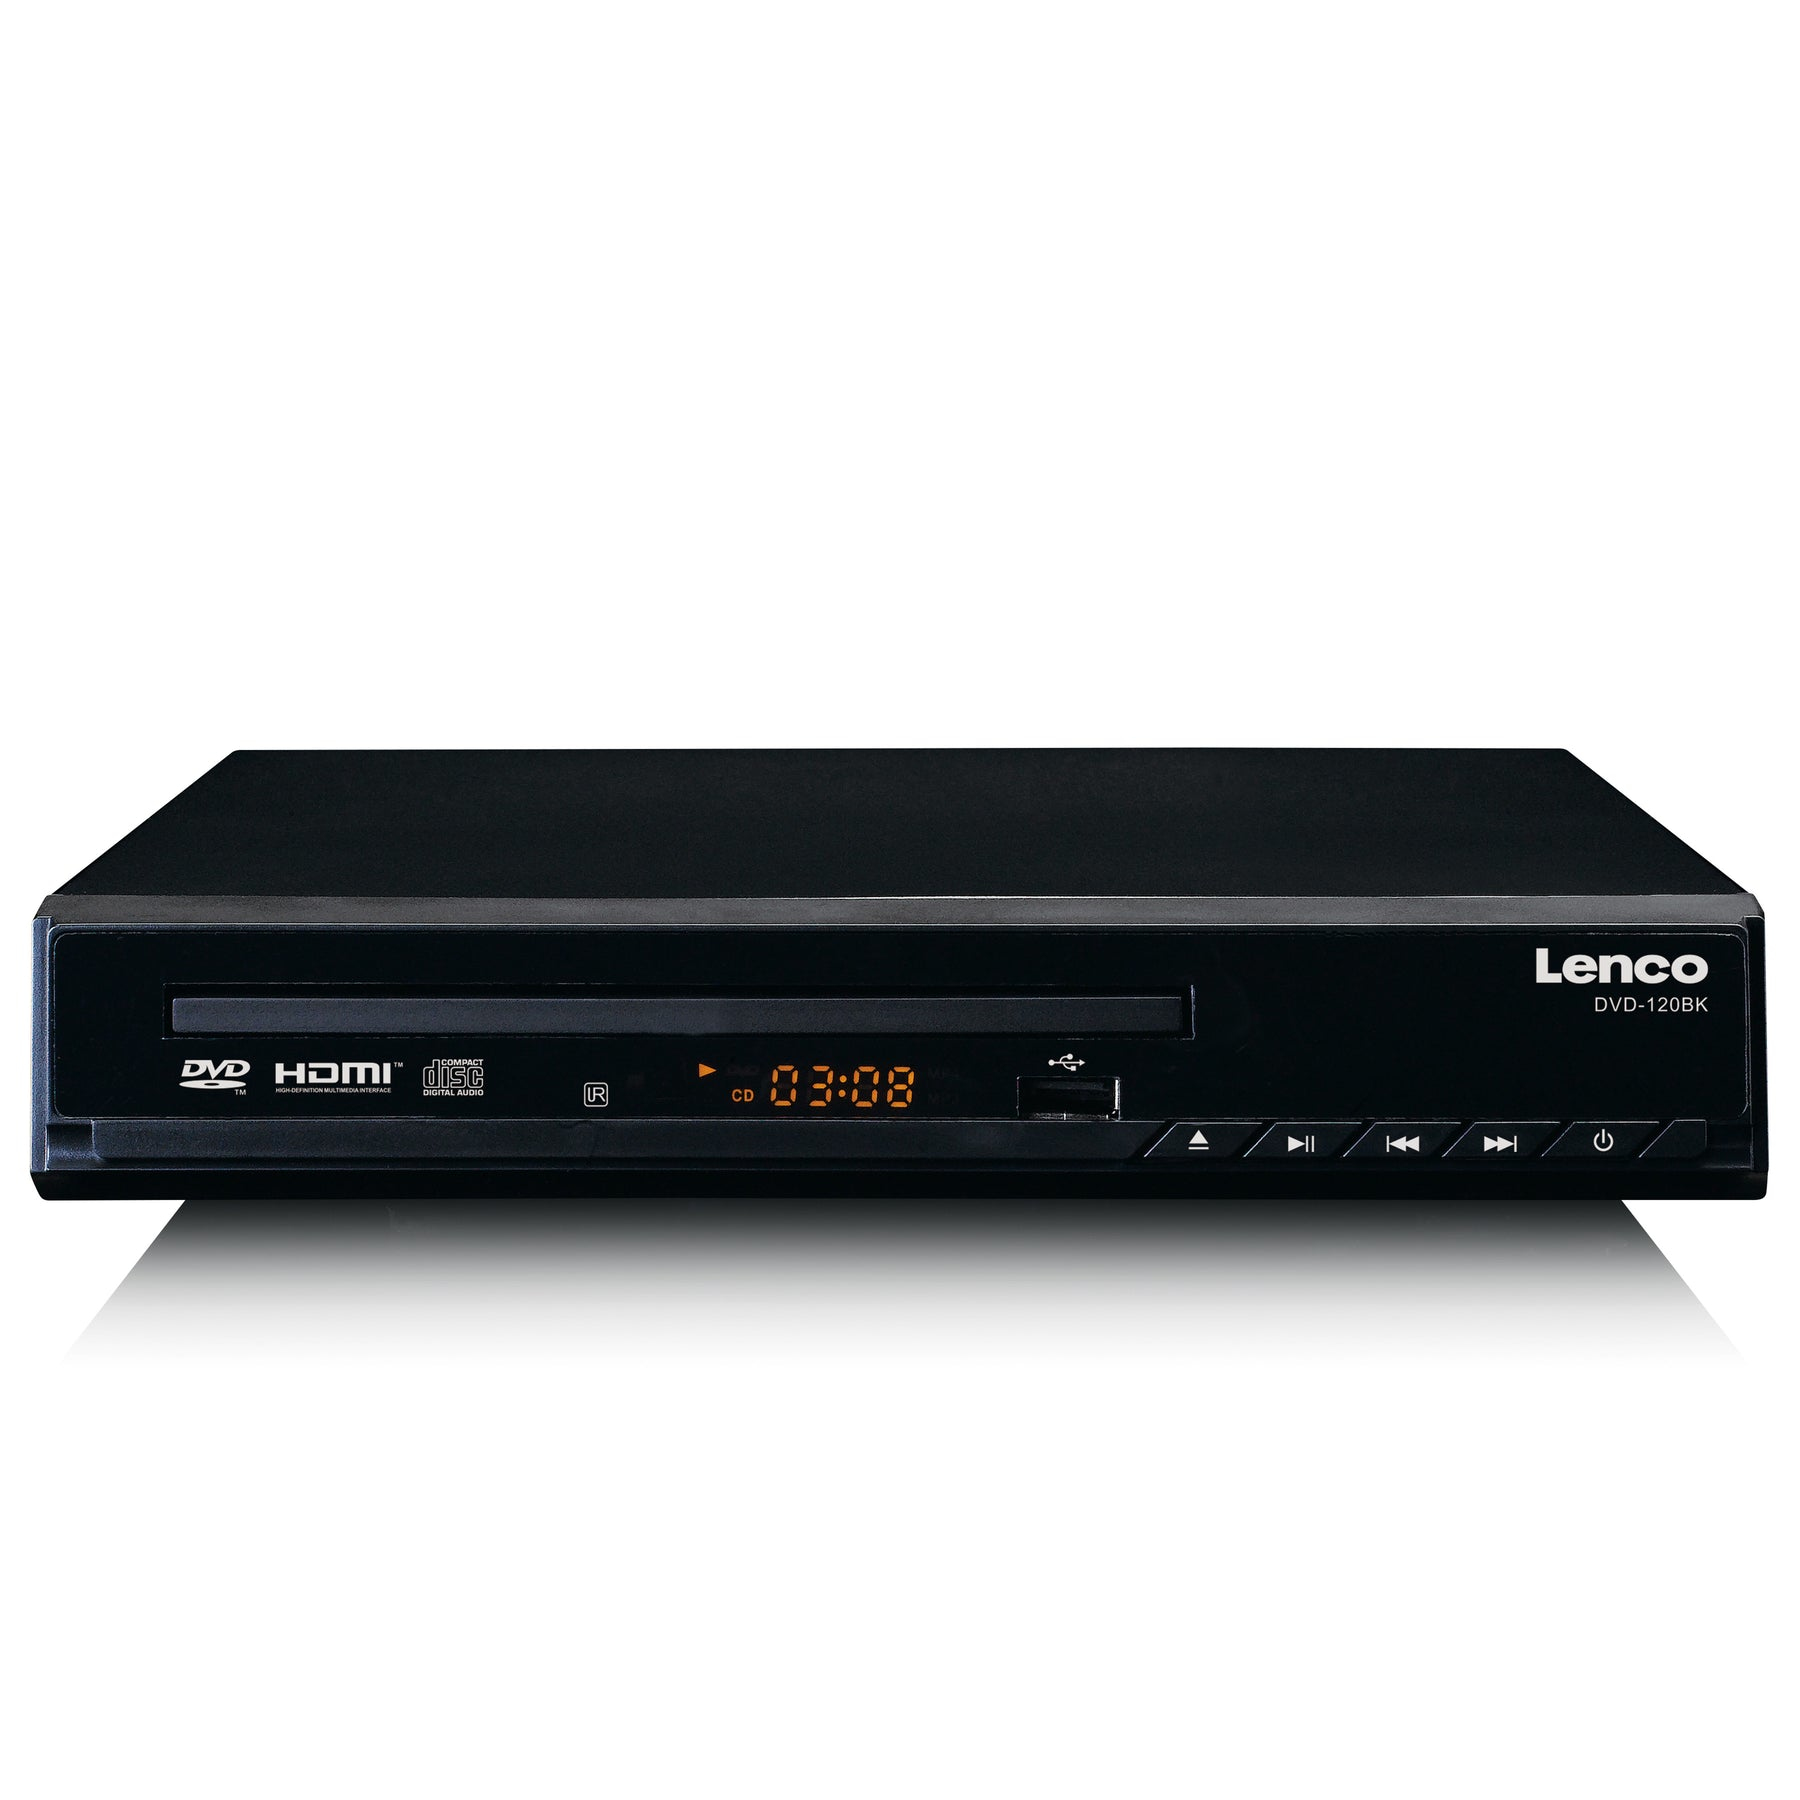 Lenco DVD-120BK | Lenco DVD-120 DVD player Black